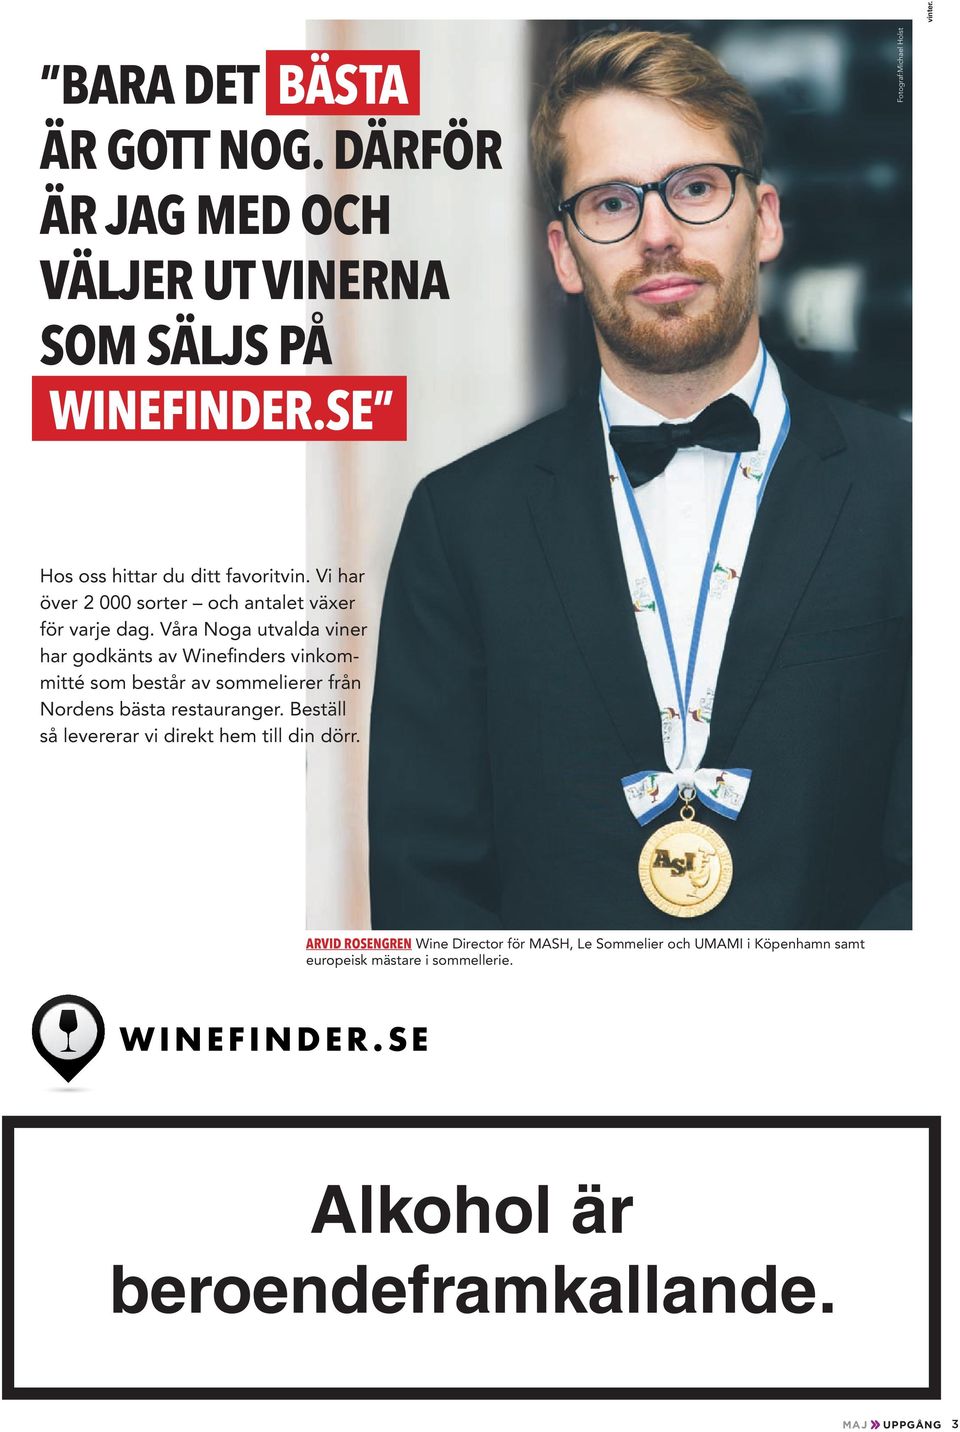 Våra Noga utvalda viner har godkänts av Winefinders vinkommitté som består av sommelierer från Nordens bästa